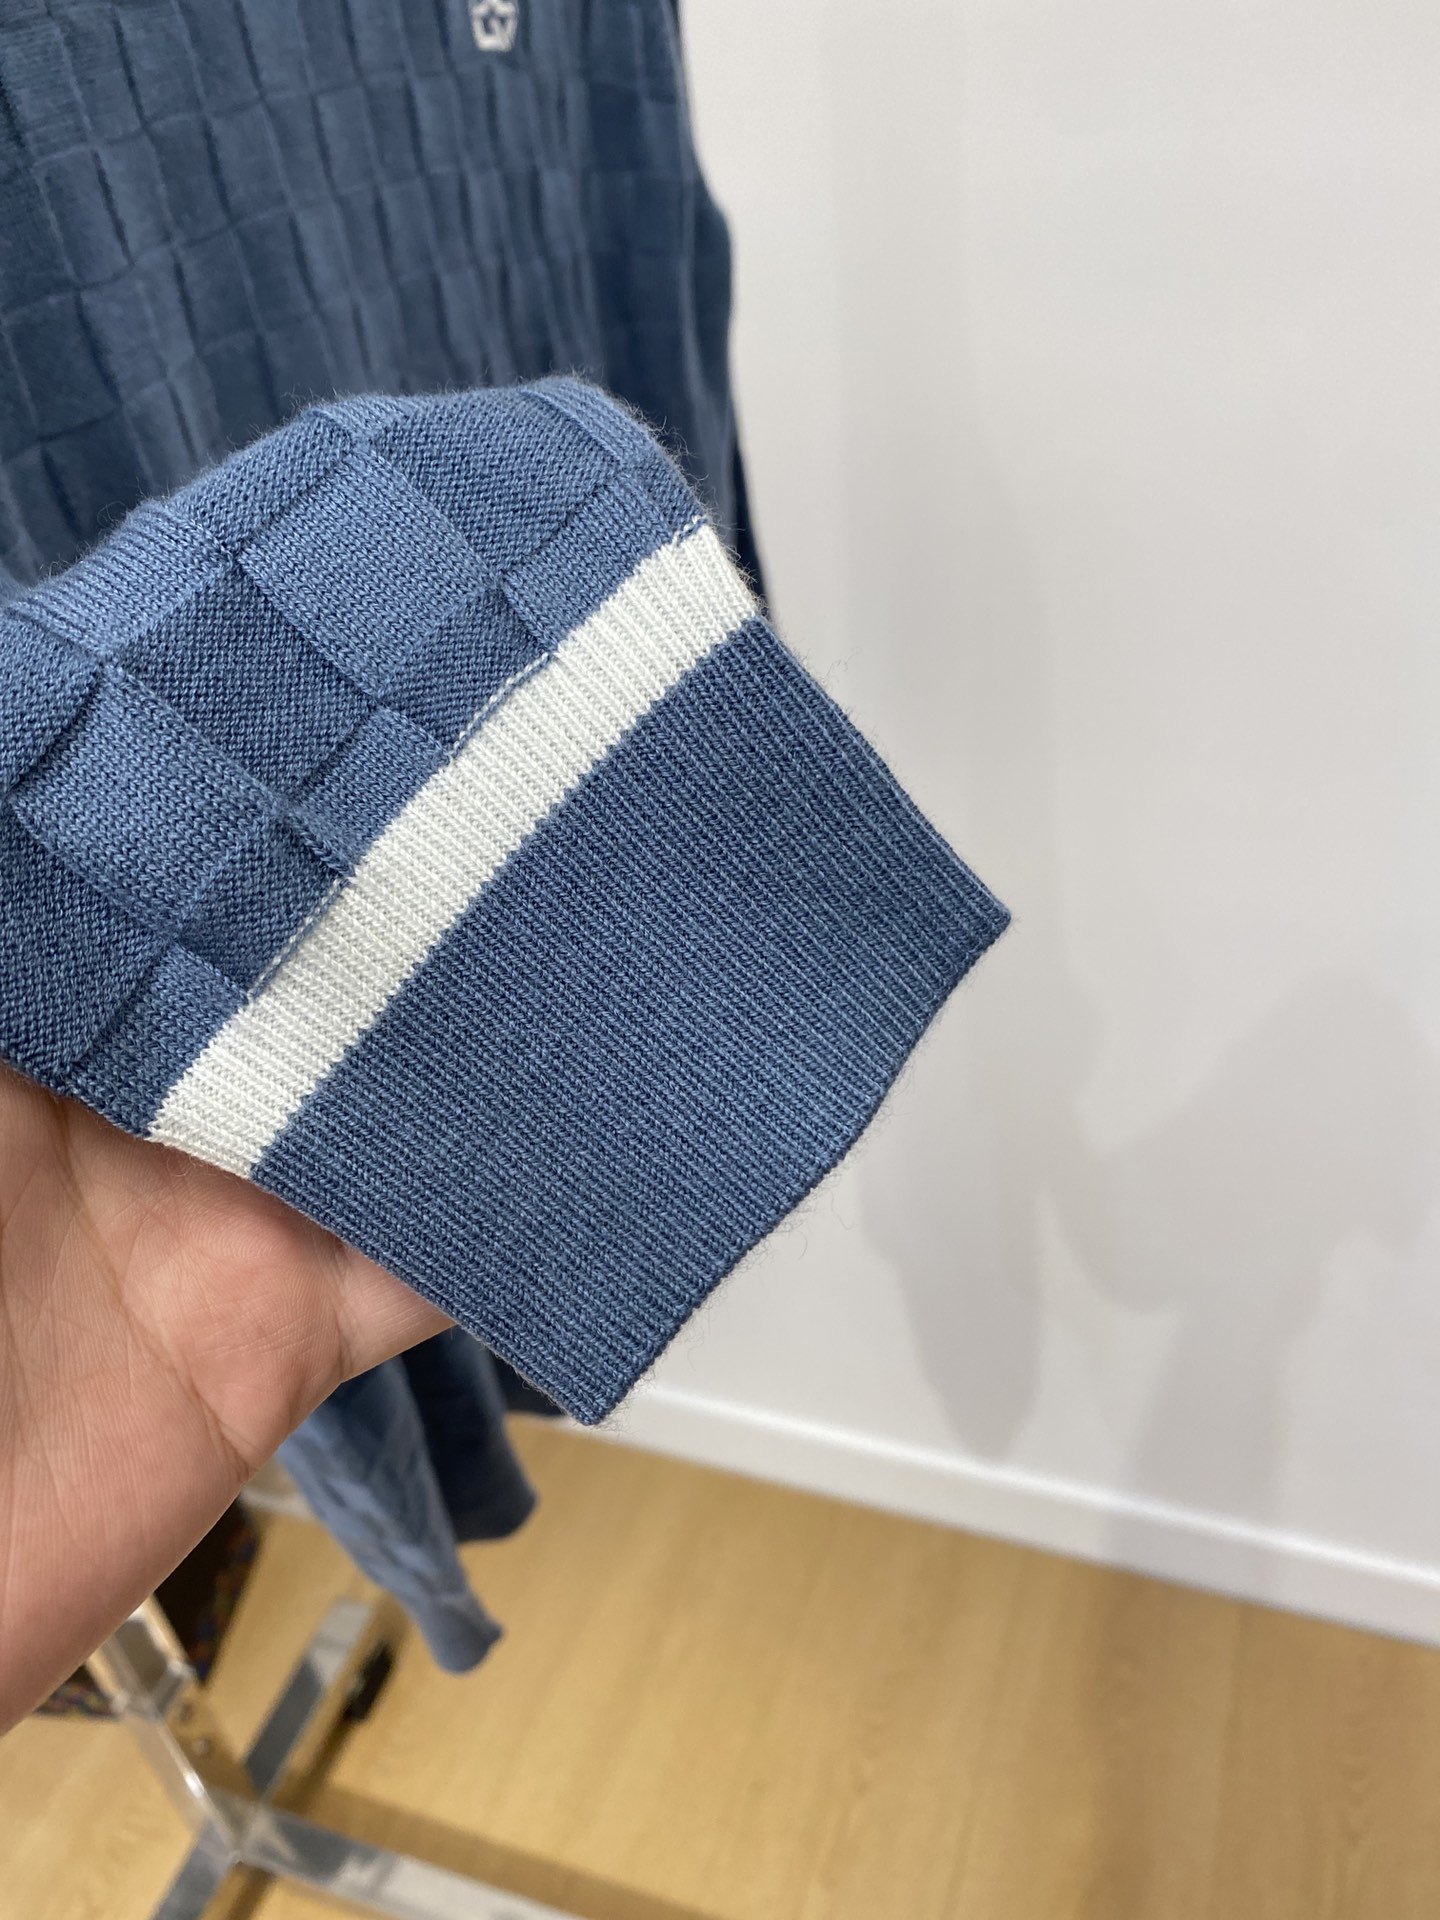 路易威登2023新品羊毛衣具有手感细腻柔软可直接与肌肤接触让暖心的纱线变化出细腻的质感顶级工艺极具特色出